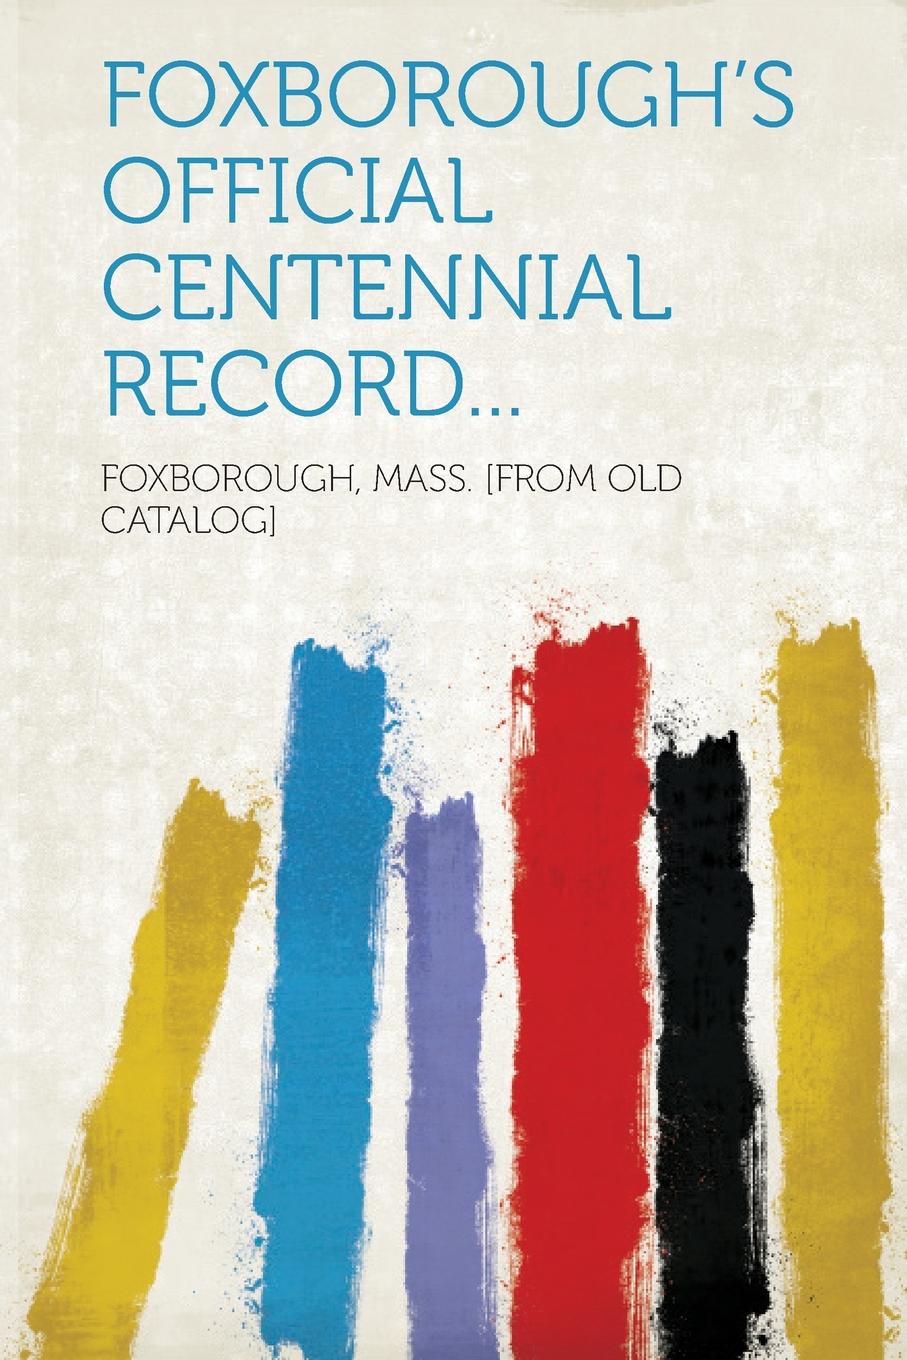 Foxborough.s Official Centennial Record... Telegraph